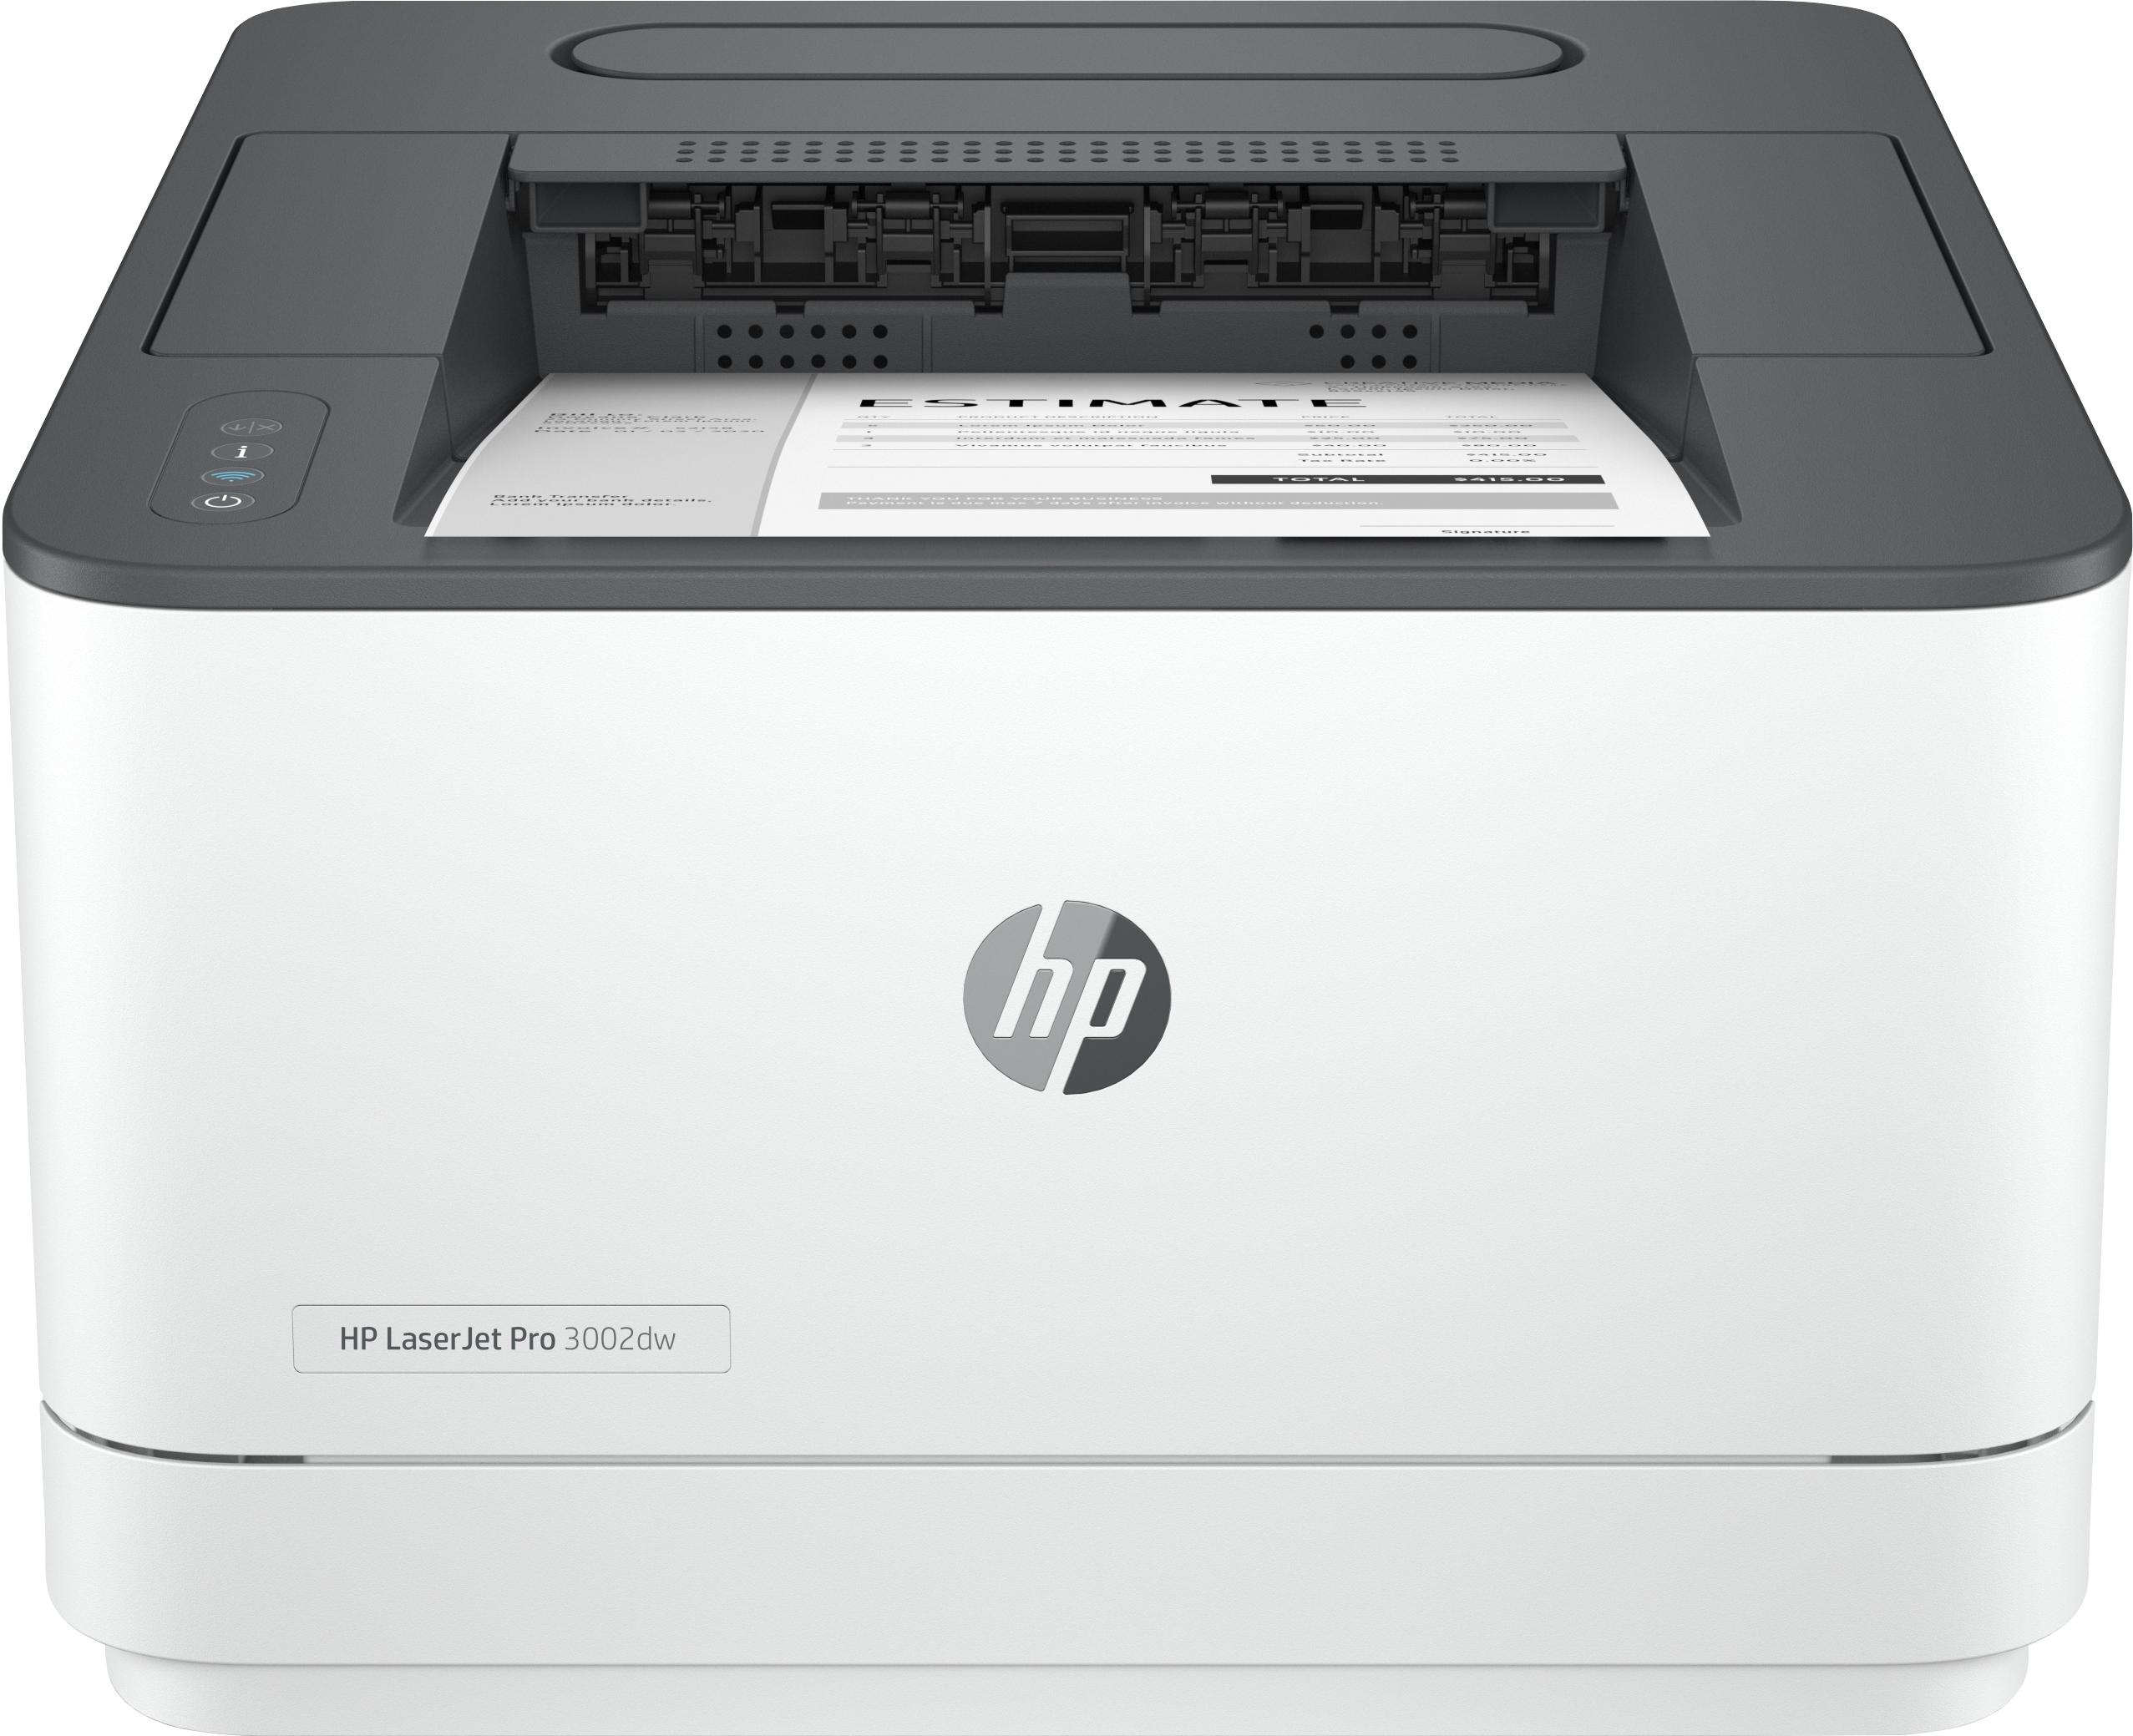 HP HP LaserJet Pro printer, Zwart-wit, voor Kleine en middelgrote ondernemingen, Print, Dual-band Wi-Fi; Optimale beveiliging; Energiezuinig; Eerste pagina snel gereed; Dubbelzijdig printen; Roam (3G652F#B19) kopen » Centralpoint